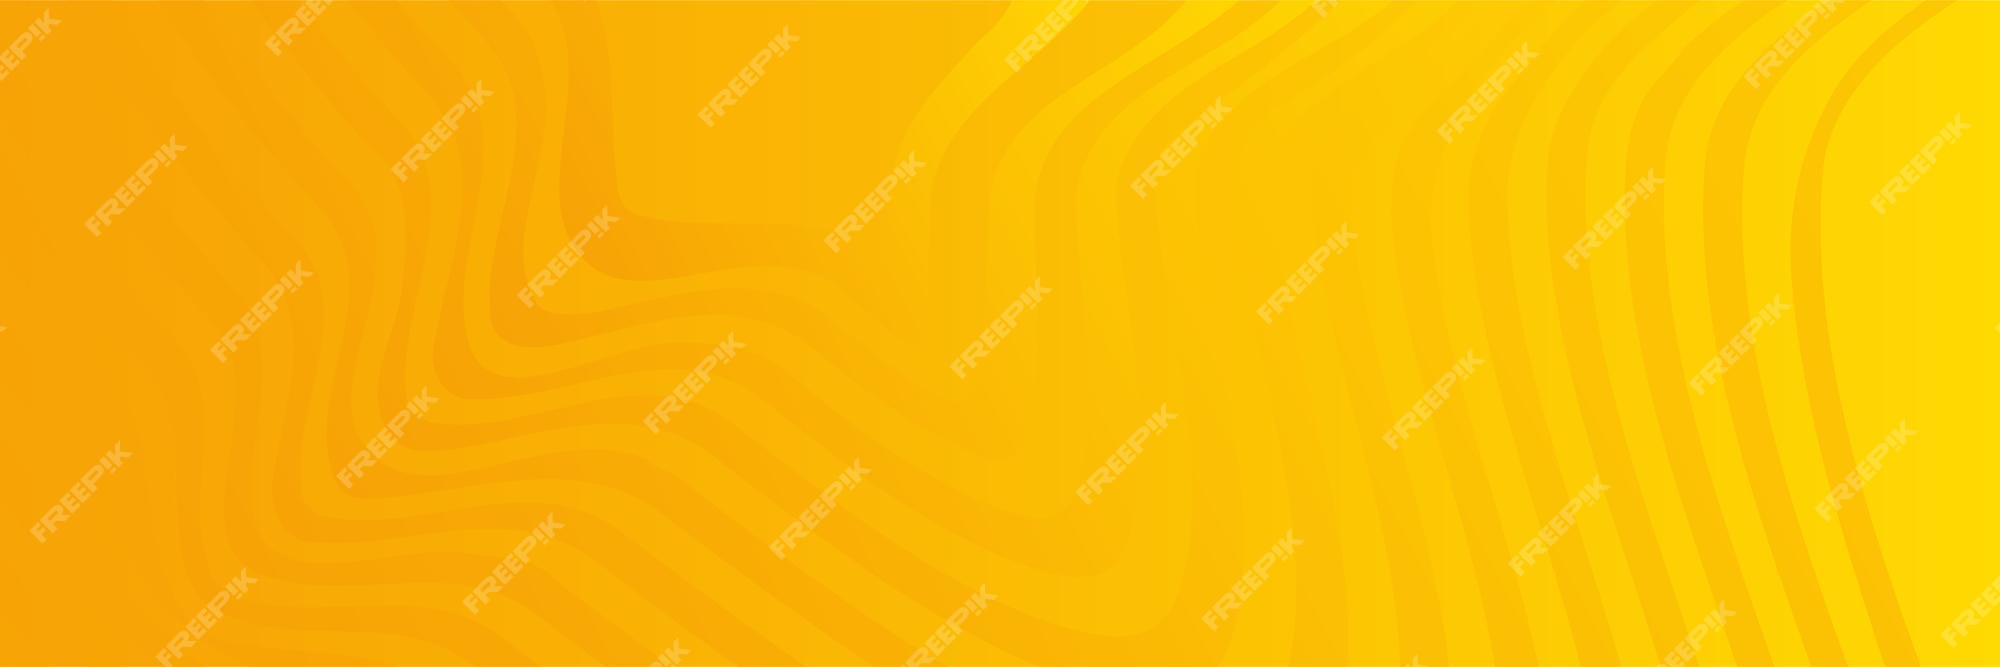 Premium Vector | Modern minimal orange background design. abstract ...